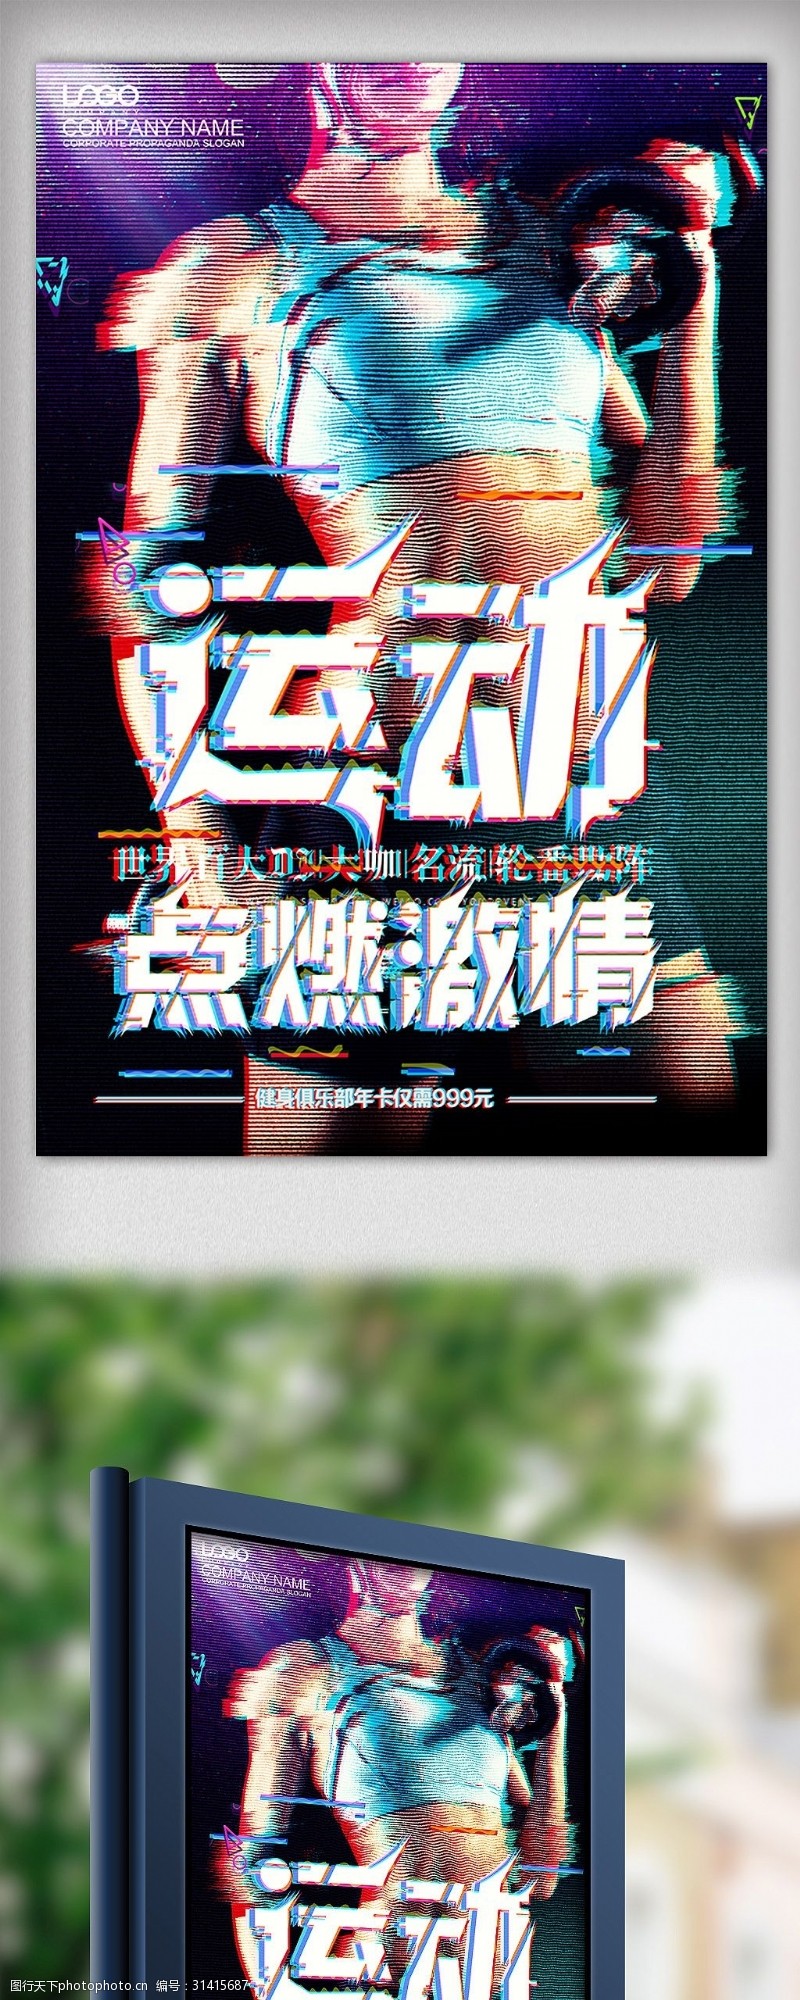 音乐展板免费下载炫彩抖音故障健身俱乐部海报设计